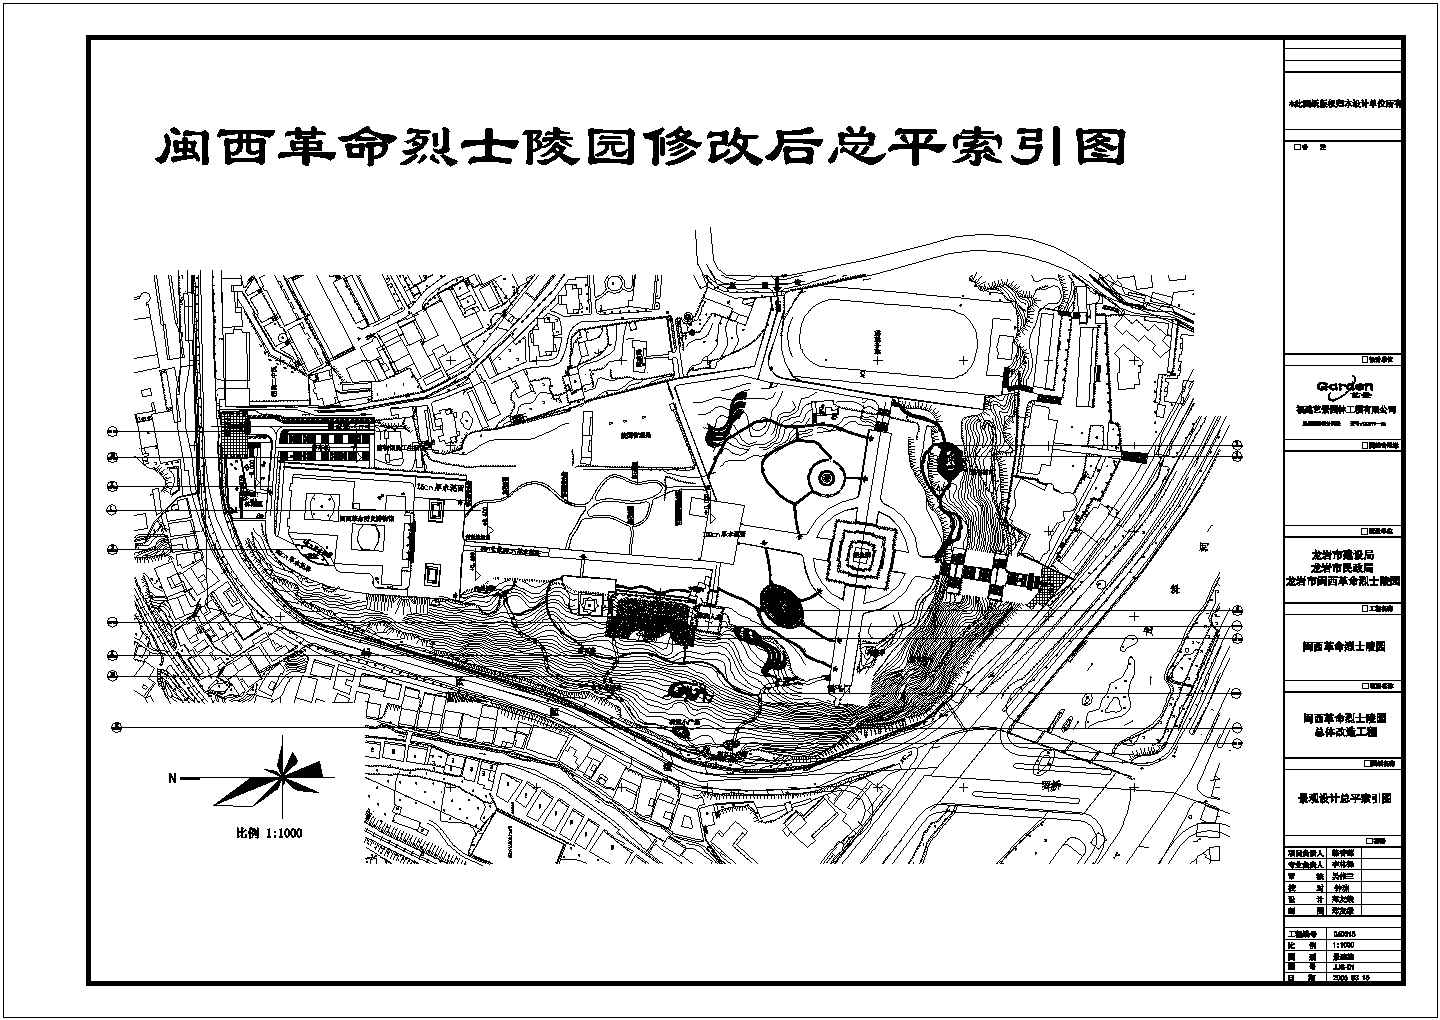 闽西革命烈士陵园园林绿化景观设计施工图